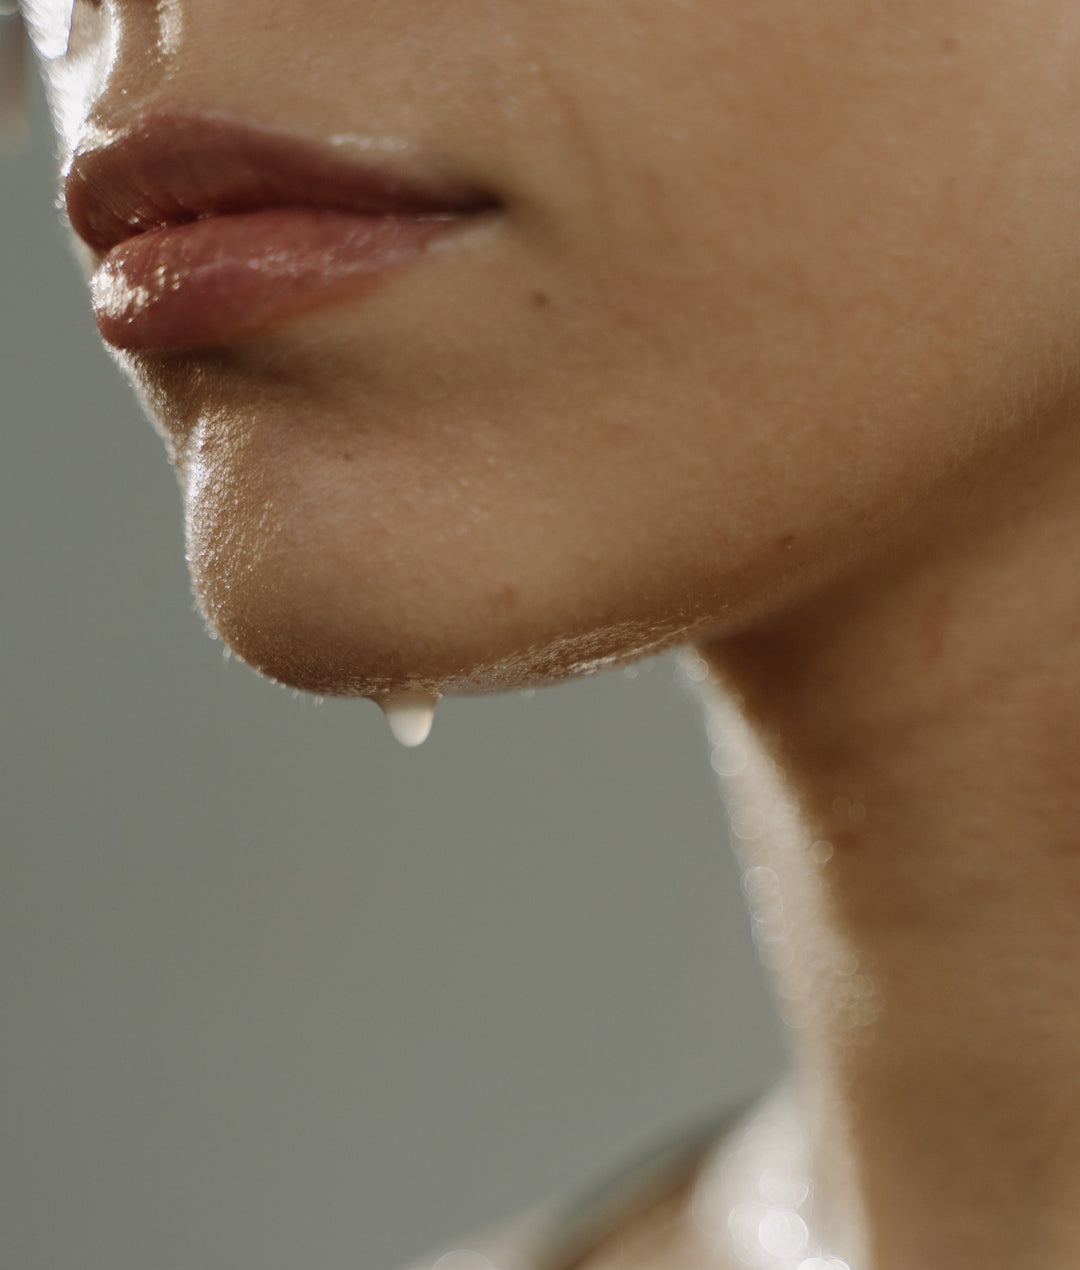 Sweat, die bestgehütete Schönheit, ideal für strahlende Haut.